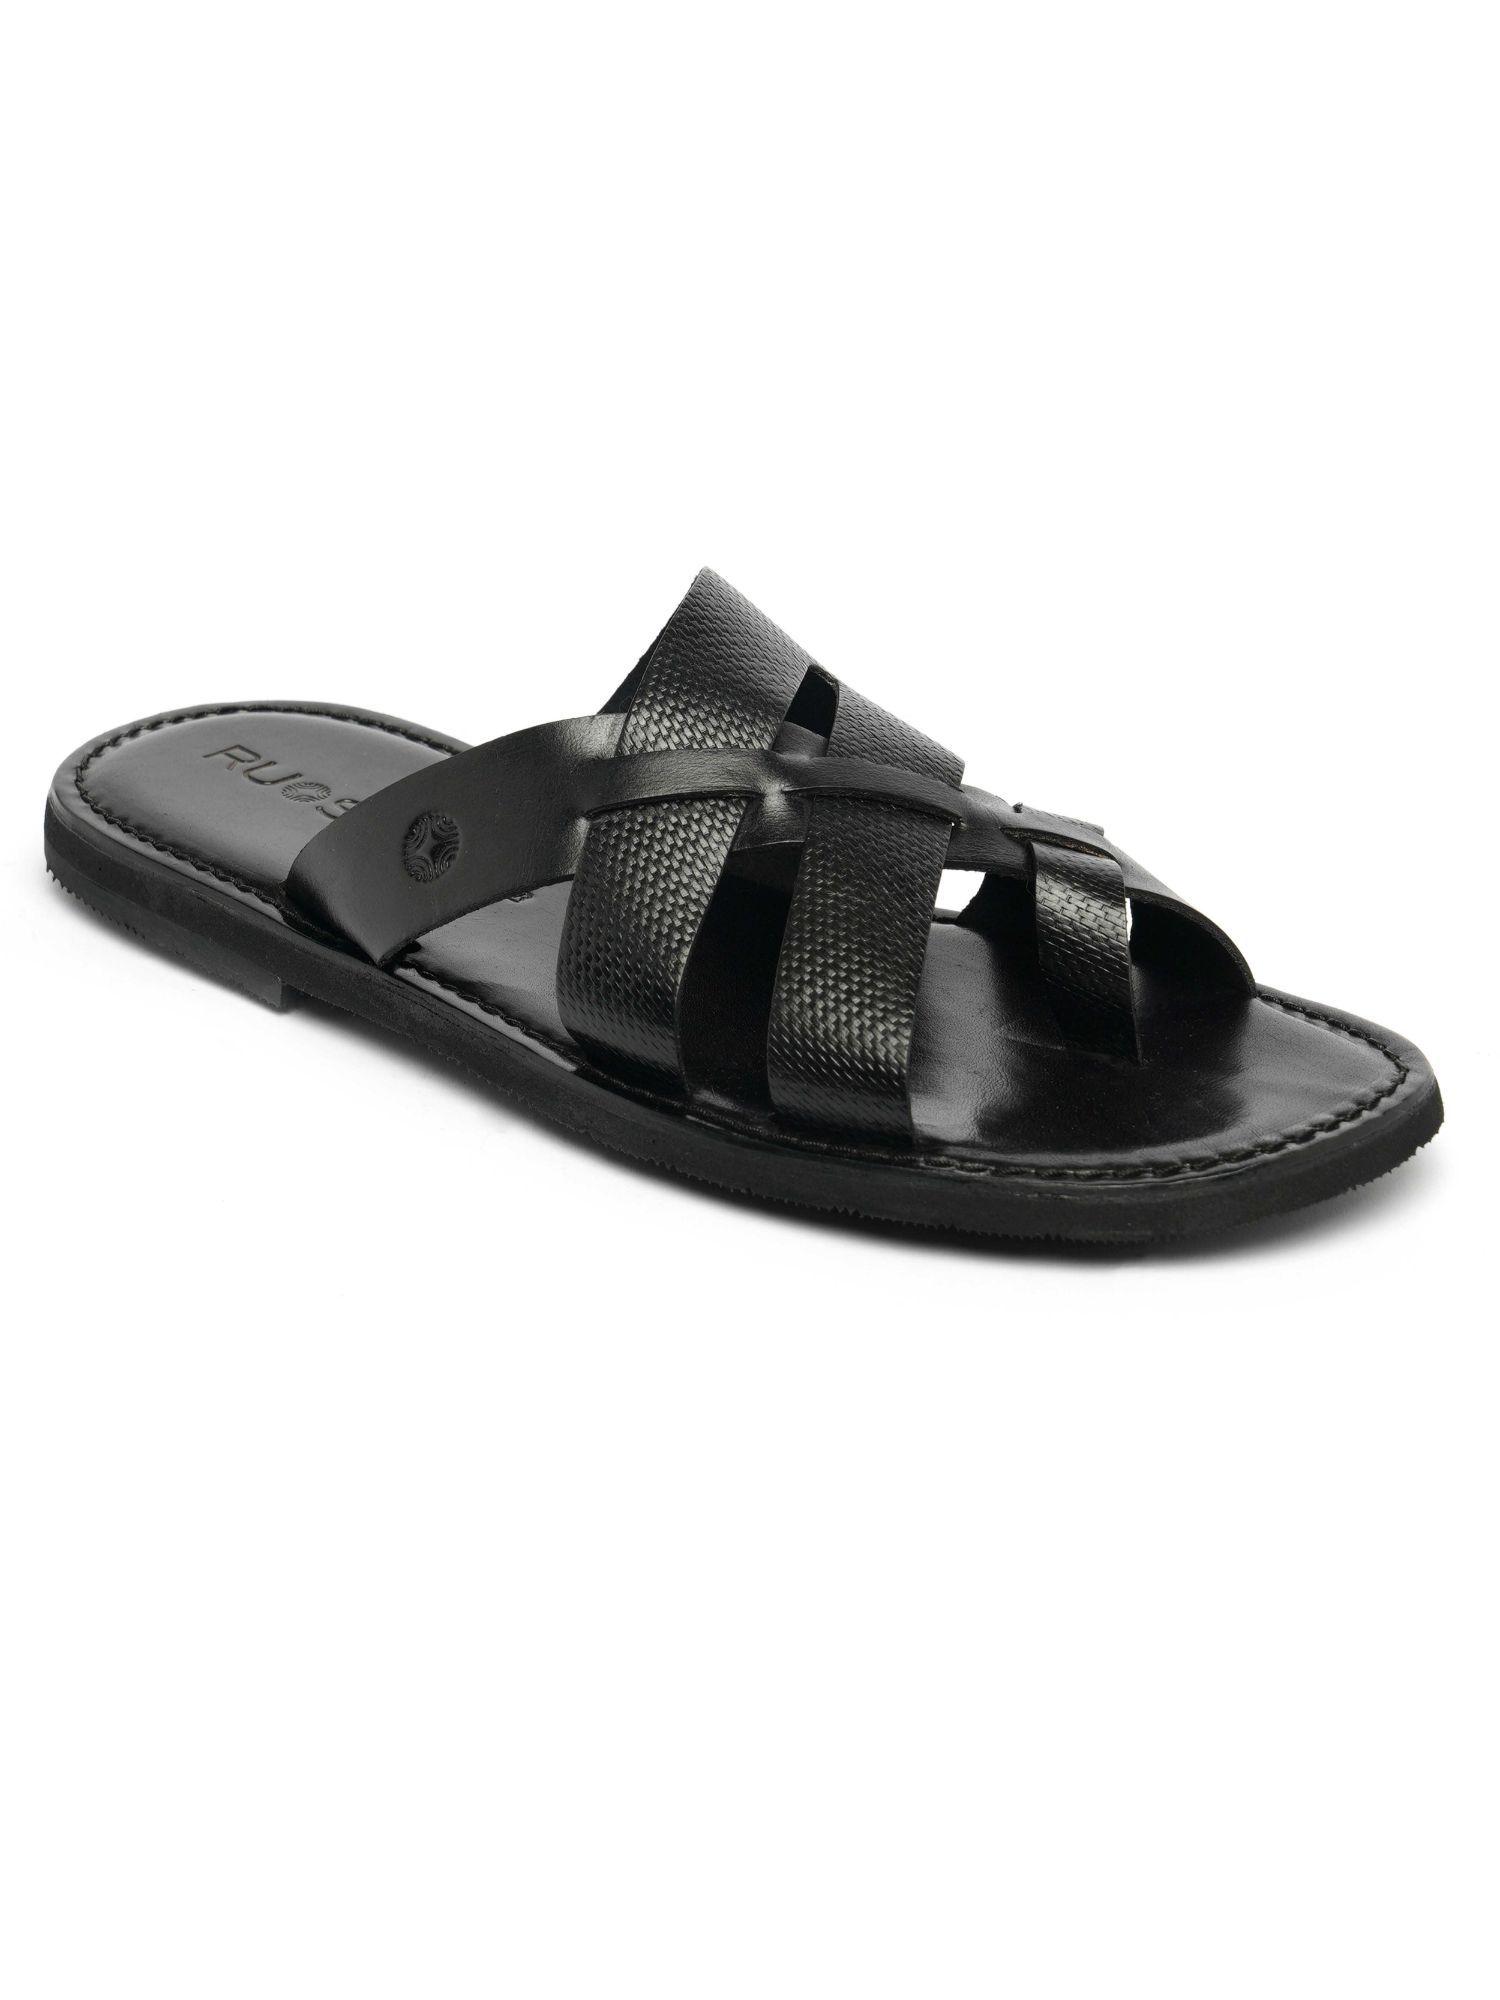 mens-footwear-open-slipper-black